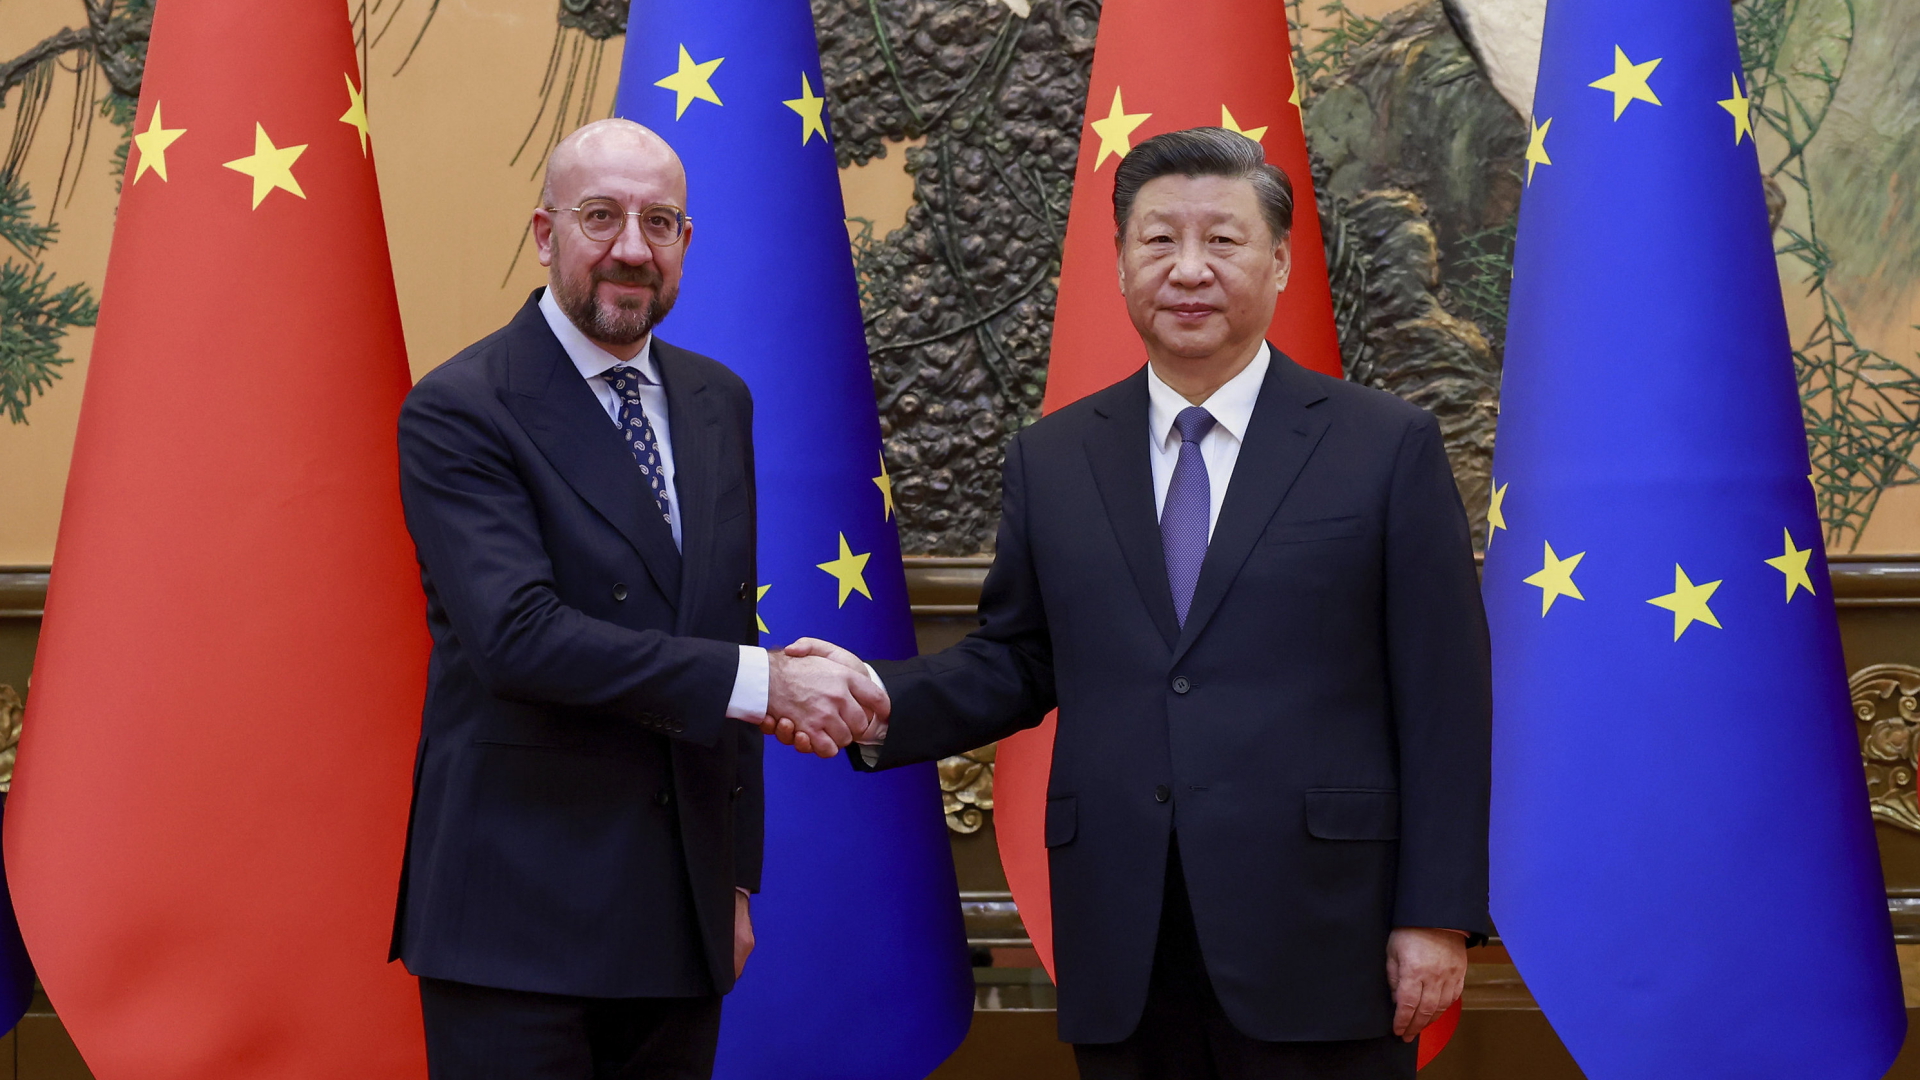 Charles Michel und Xi Jinping schütteln sich bei einem Treffen in Peking die Hand, dahinter stehen Flaggen der EU und Chinas. 